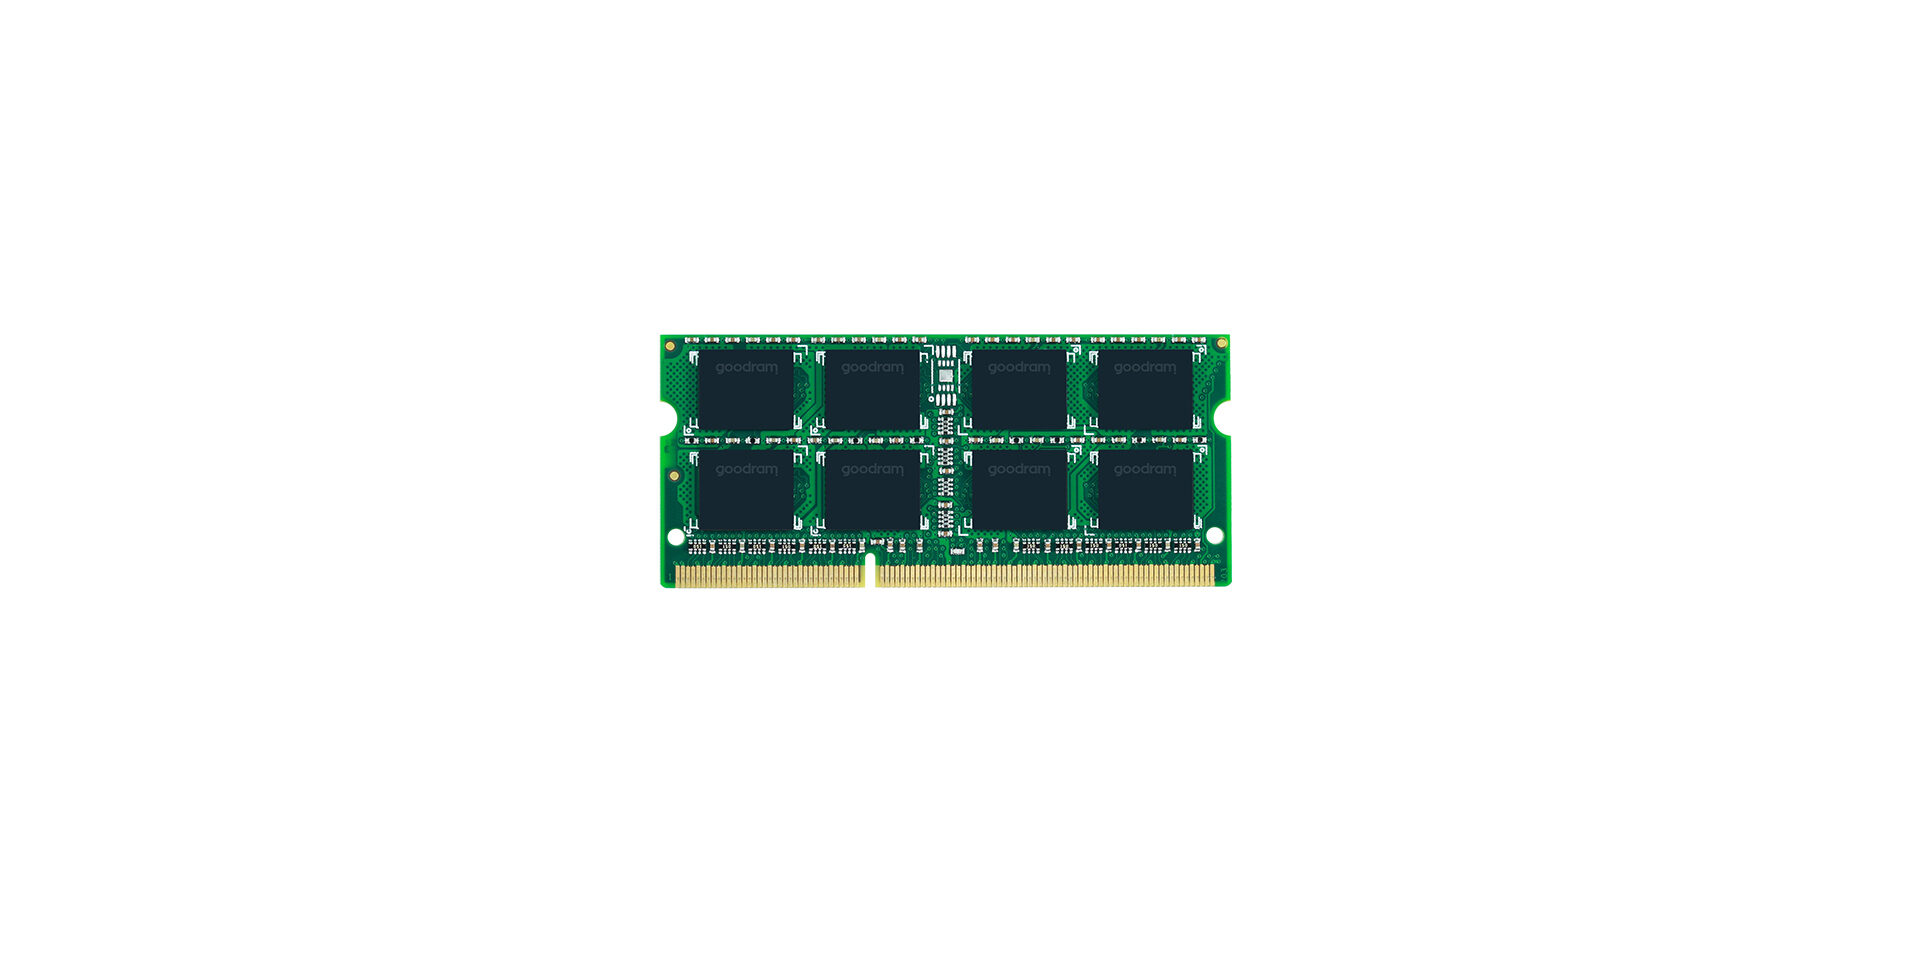 DDR3 SODIMM marki Goodram - produkt dedykowany